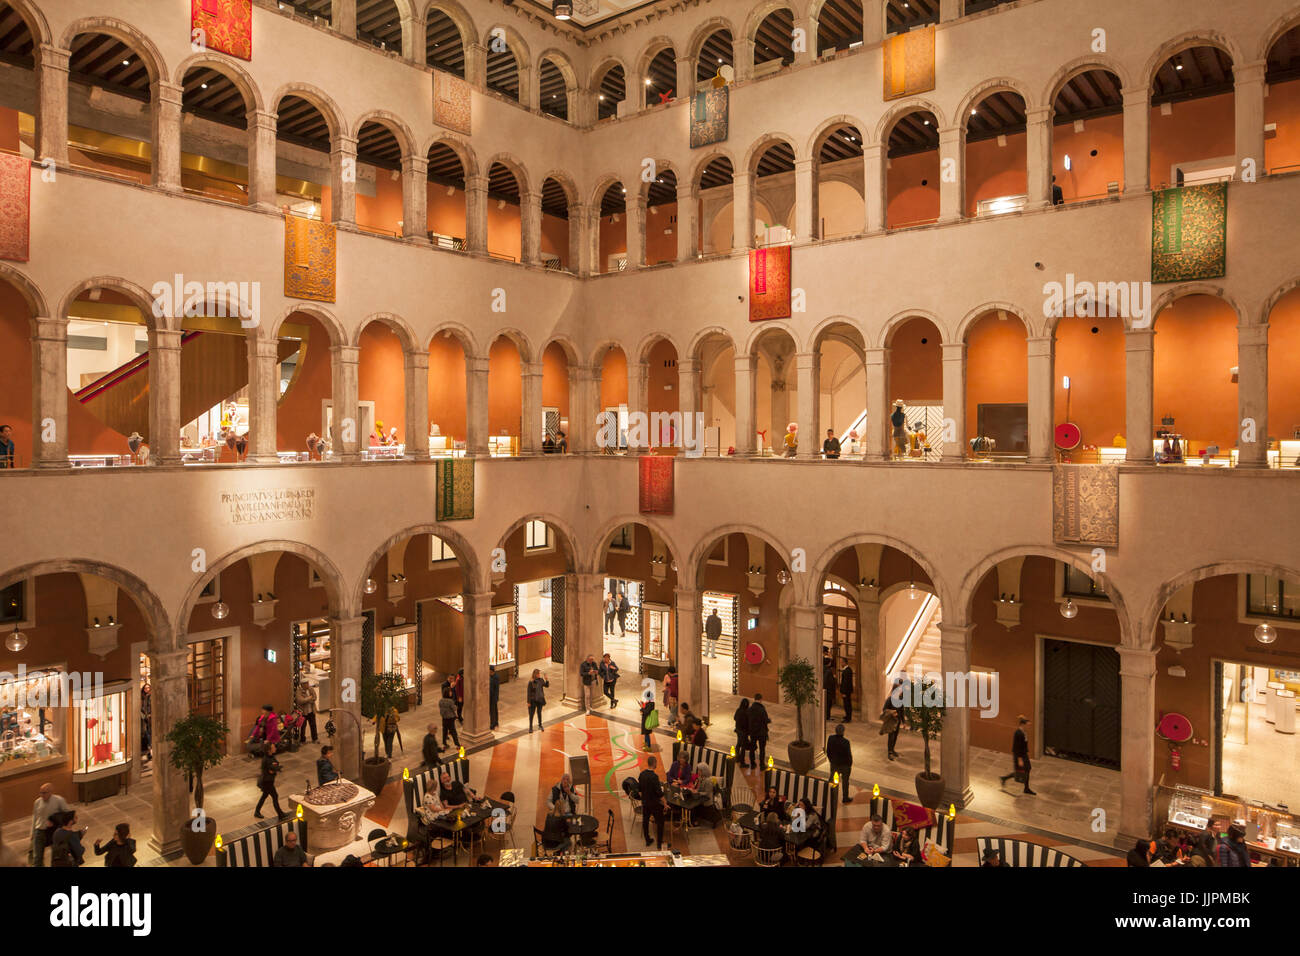 Interior of Fontego dei Tedeschi shopping centre in Venice. Stock Photo